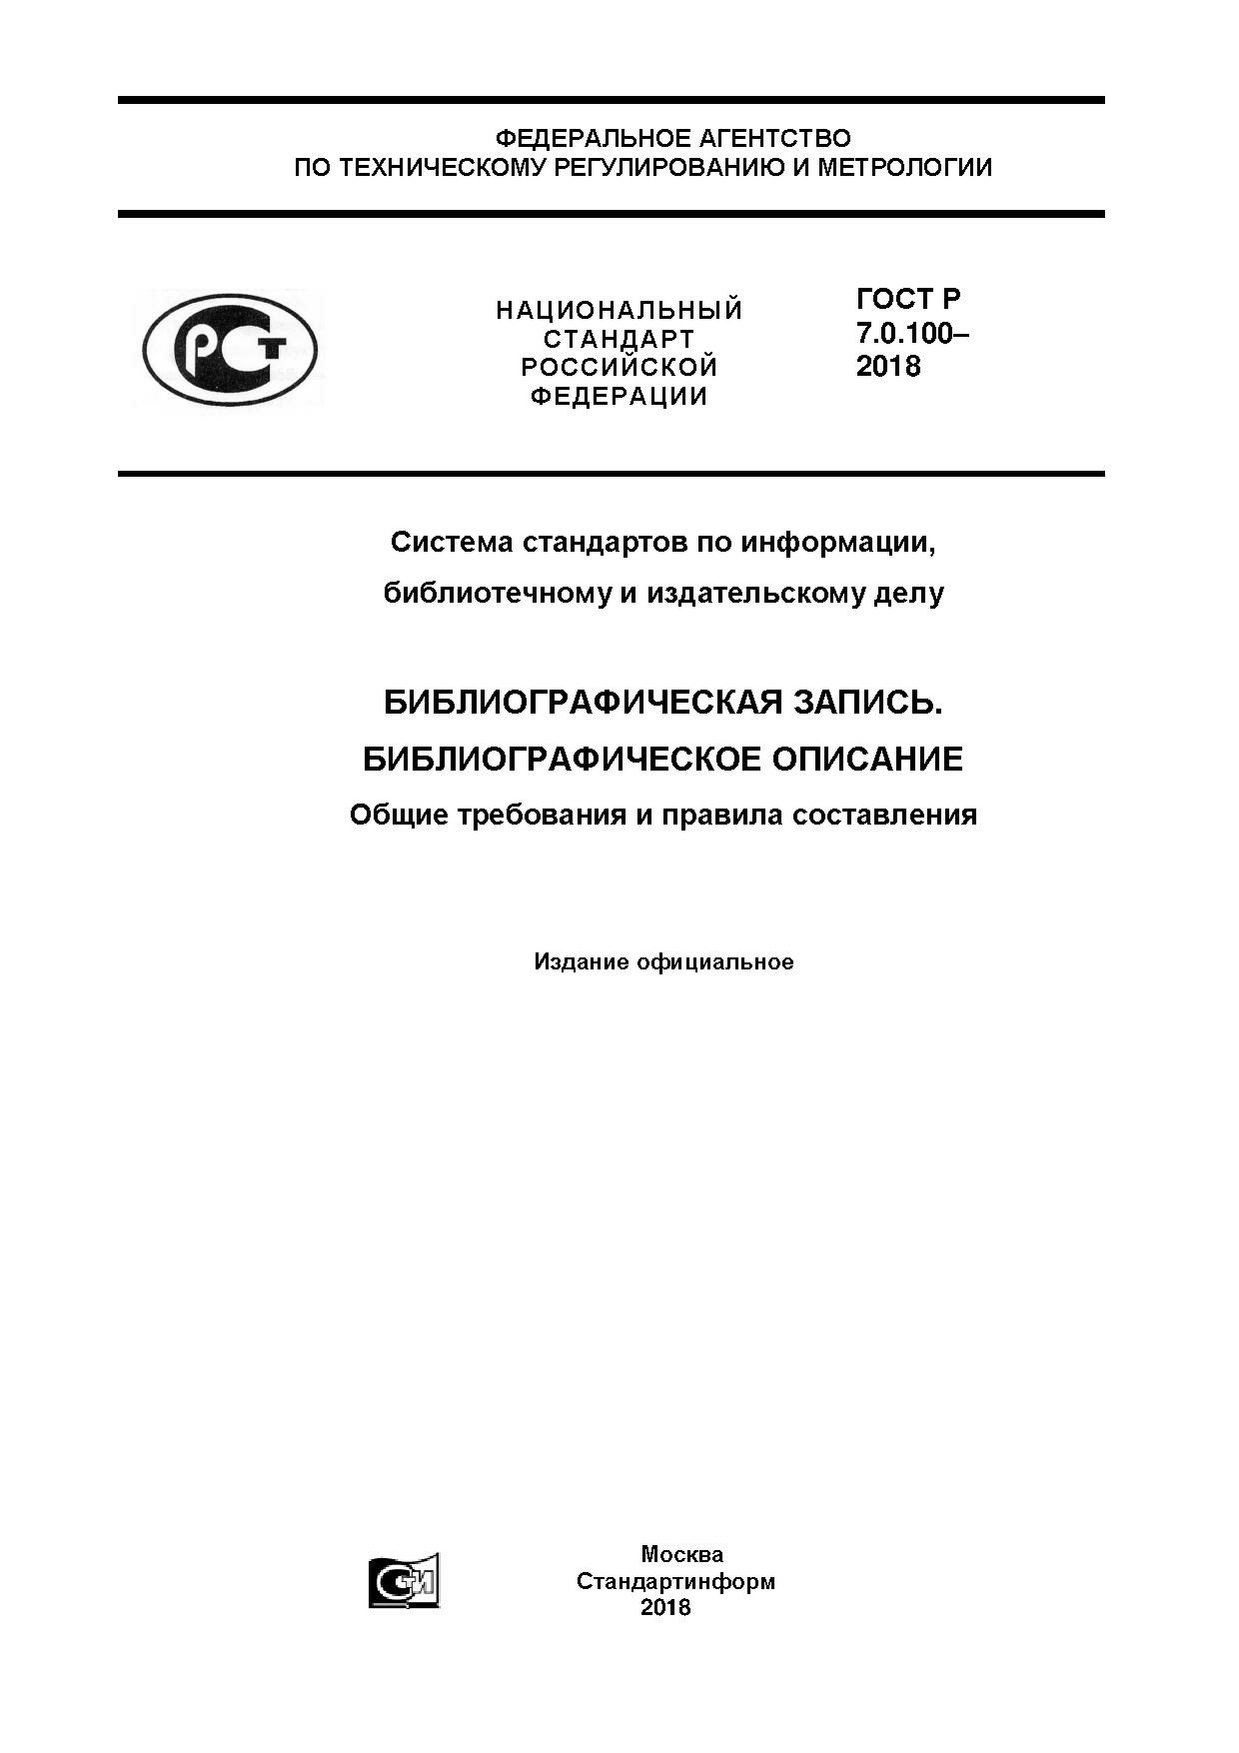 ГОСТ Р 7.0.100–2018.pdf